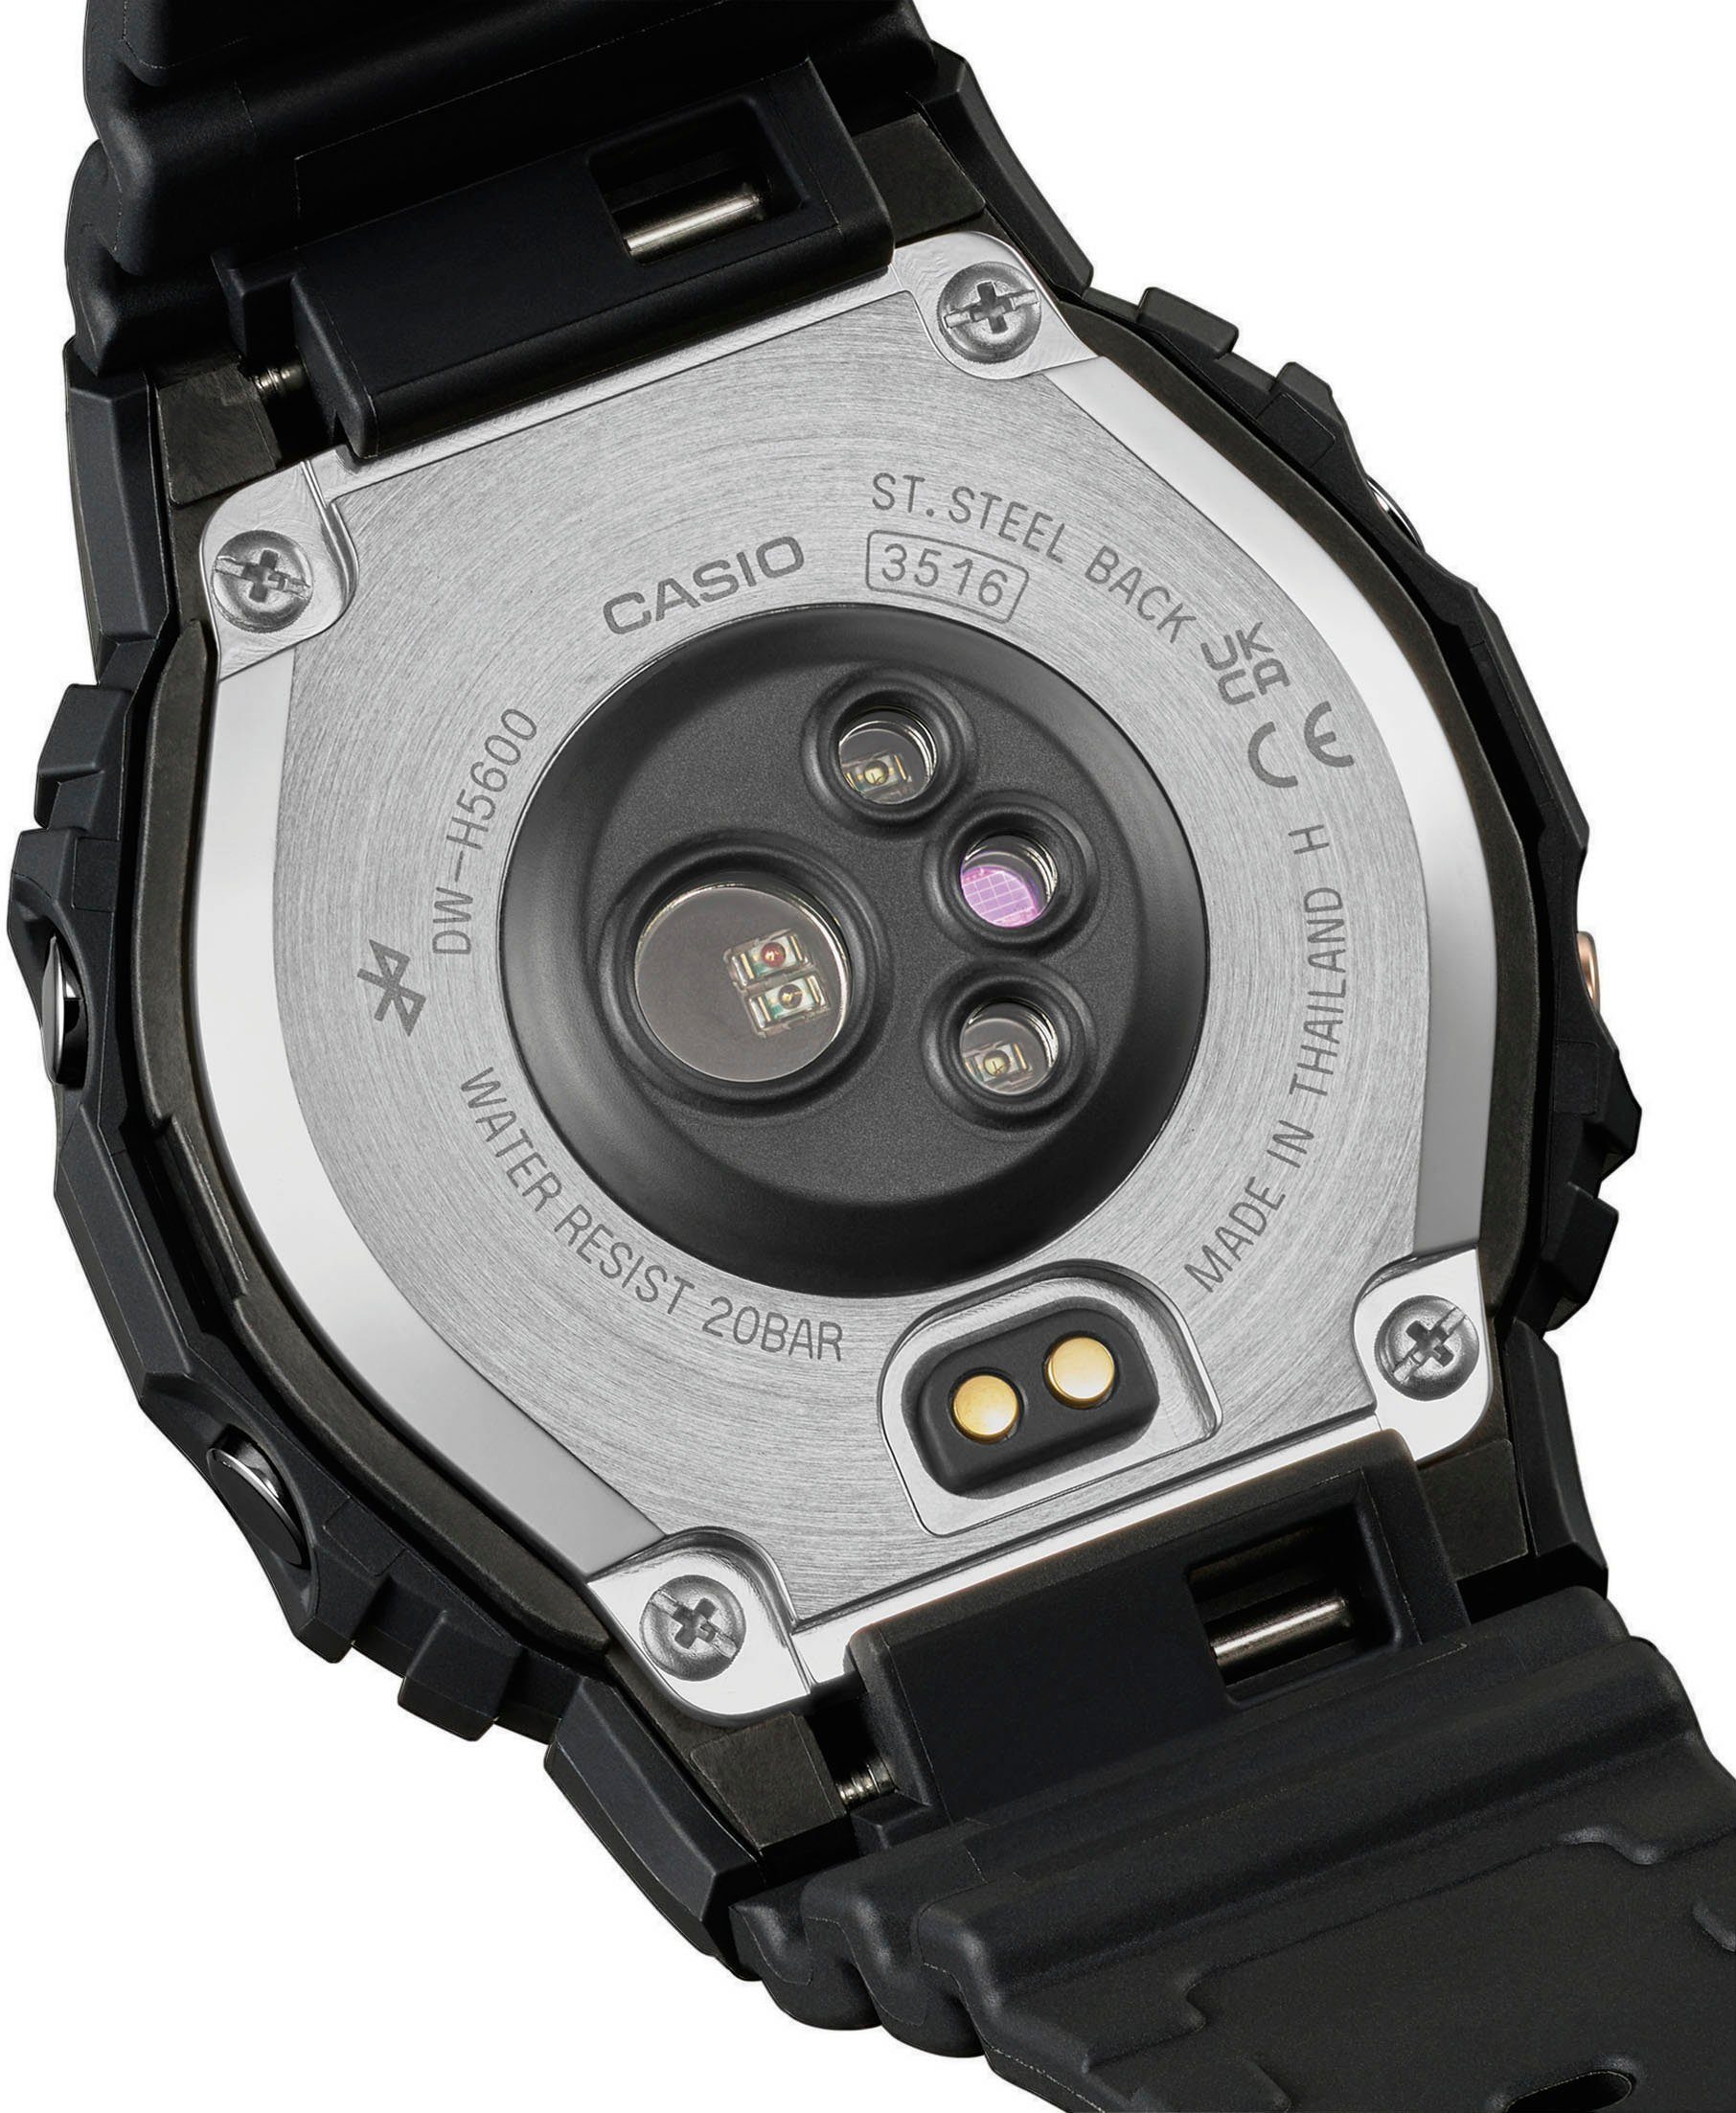 DW-H5600-1ER Smartwatch, Solar G-SHOCK CASIO